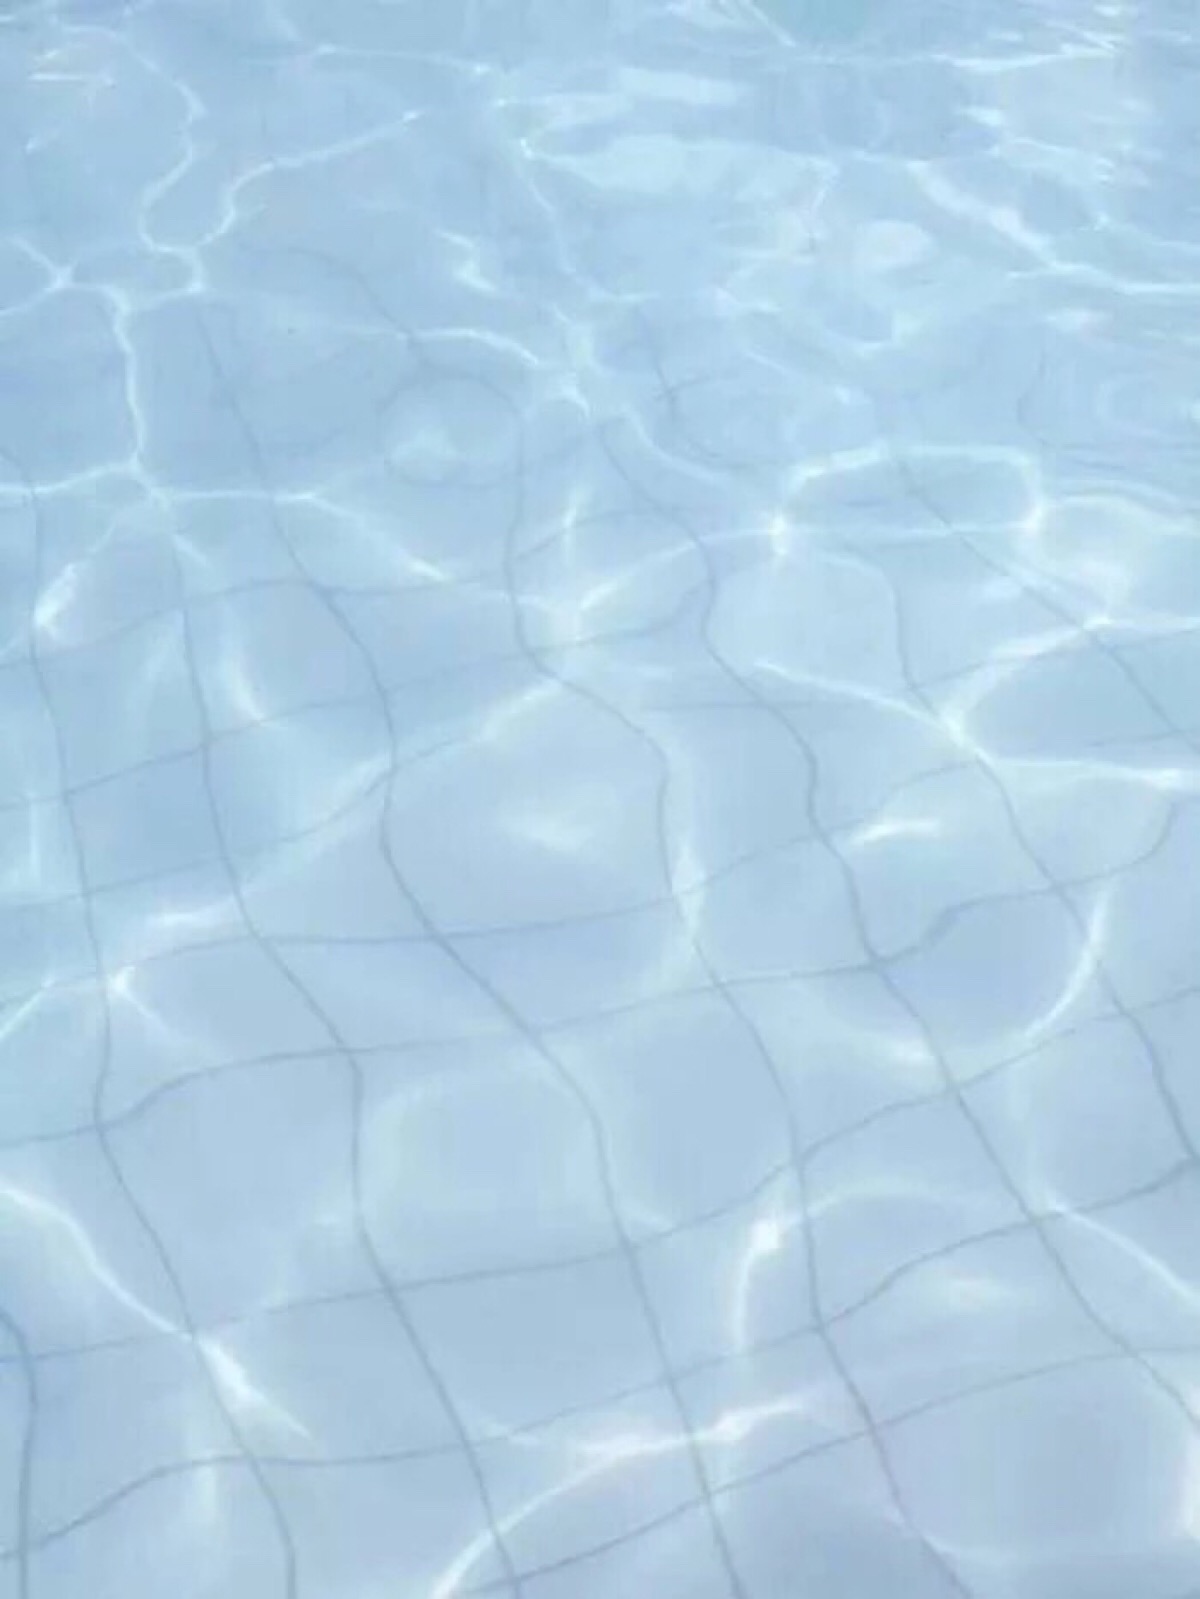 泳池美女 - 空间壁纸网